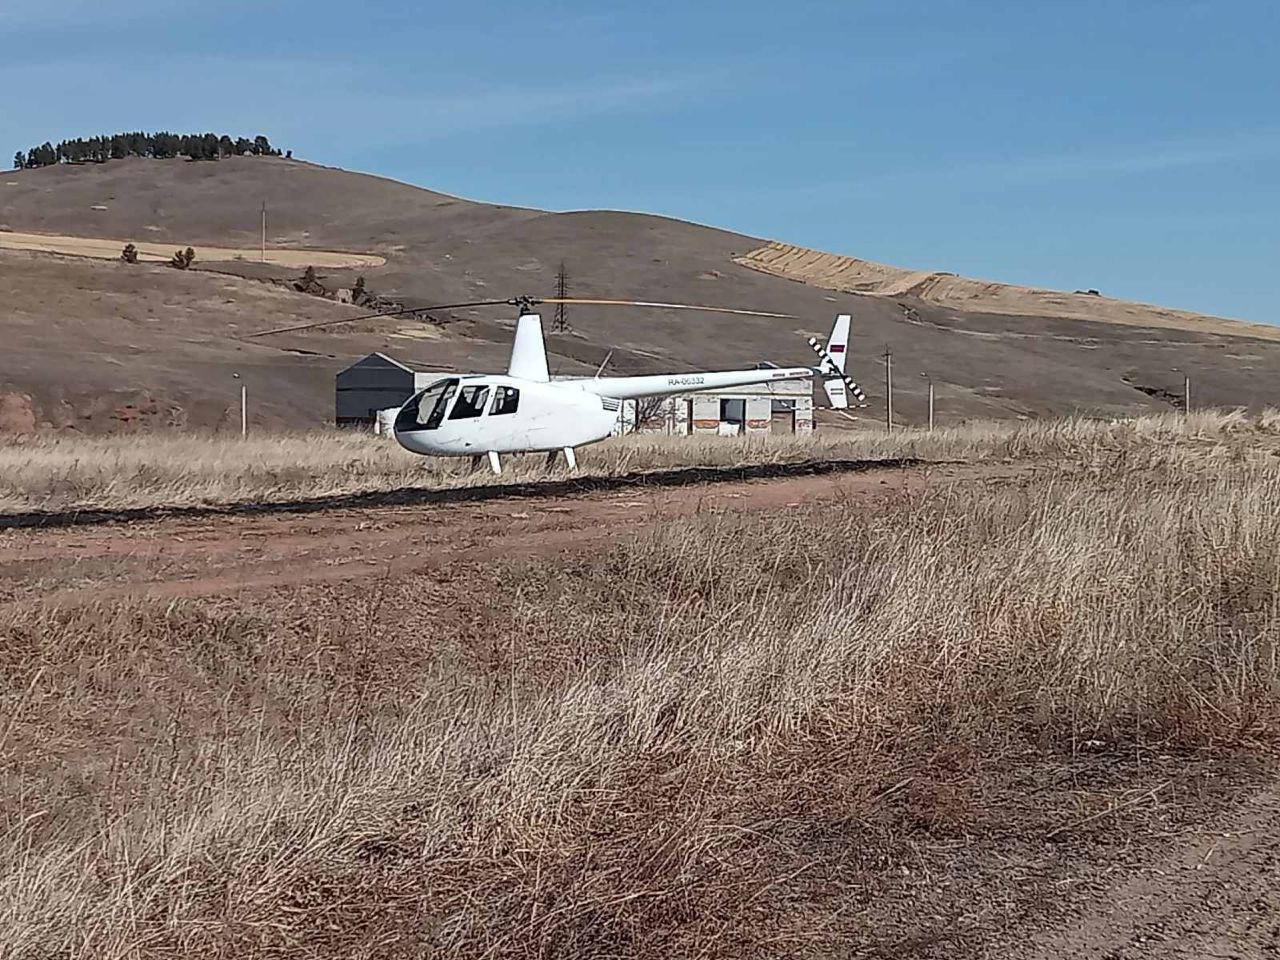 Фото В селе Бурятии жители гадают о причинах появления белого вертолёта